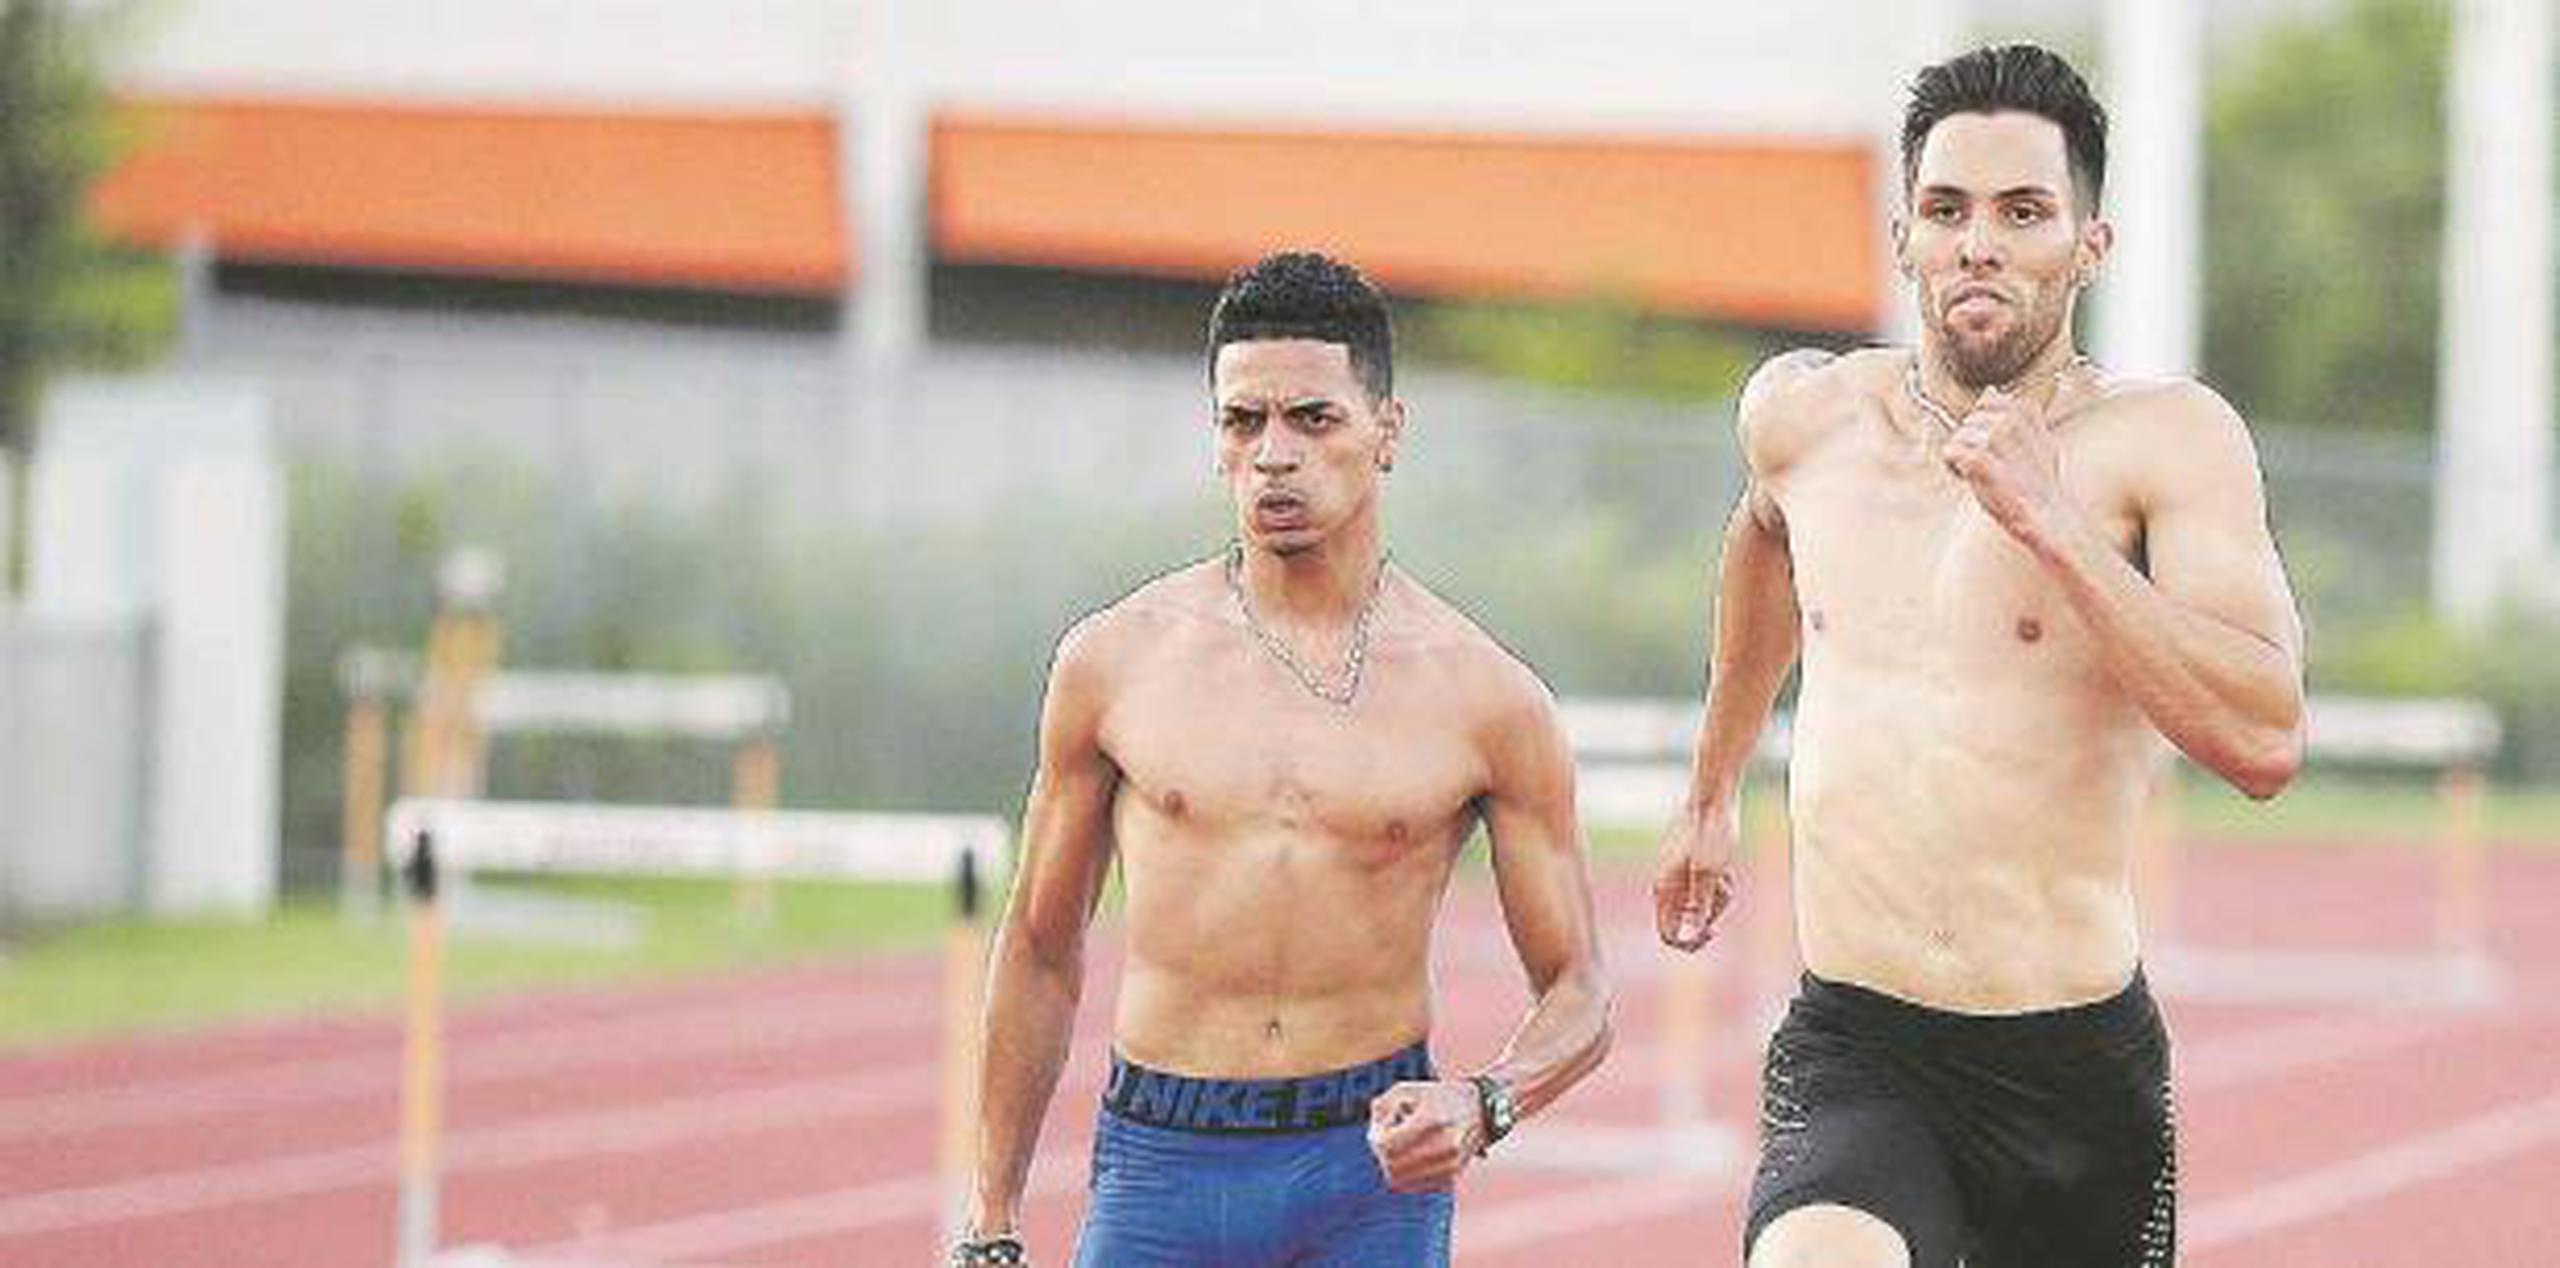 Mañana Andrés Arroyo y Wesley Vázquez corren en Jamaica para intentar definir las clasificaciones del evento. (Archivo)